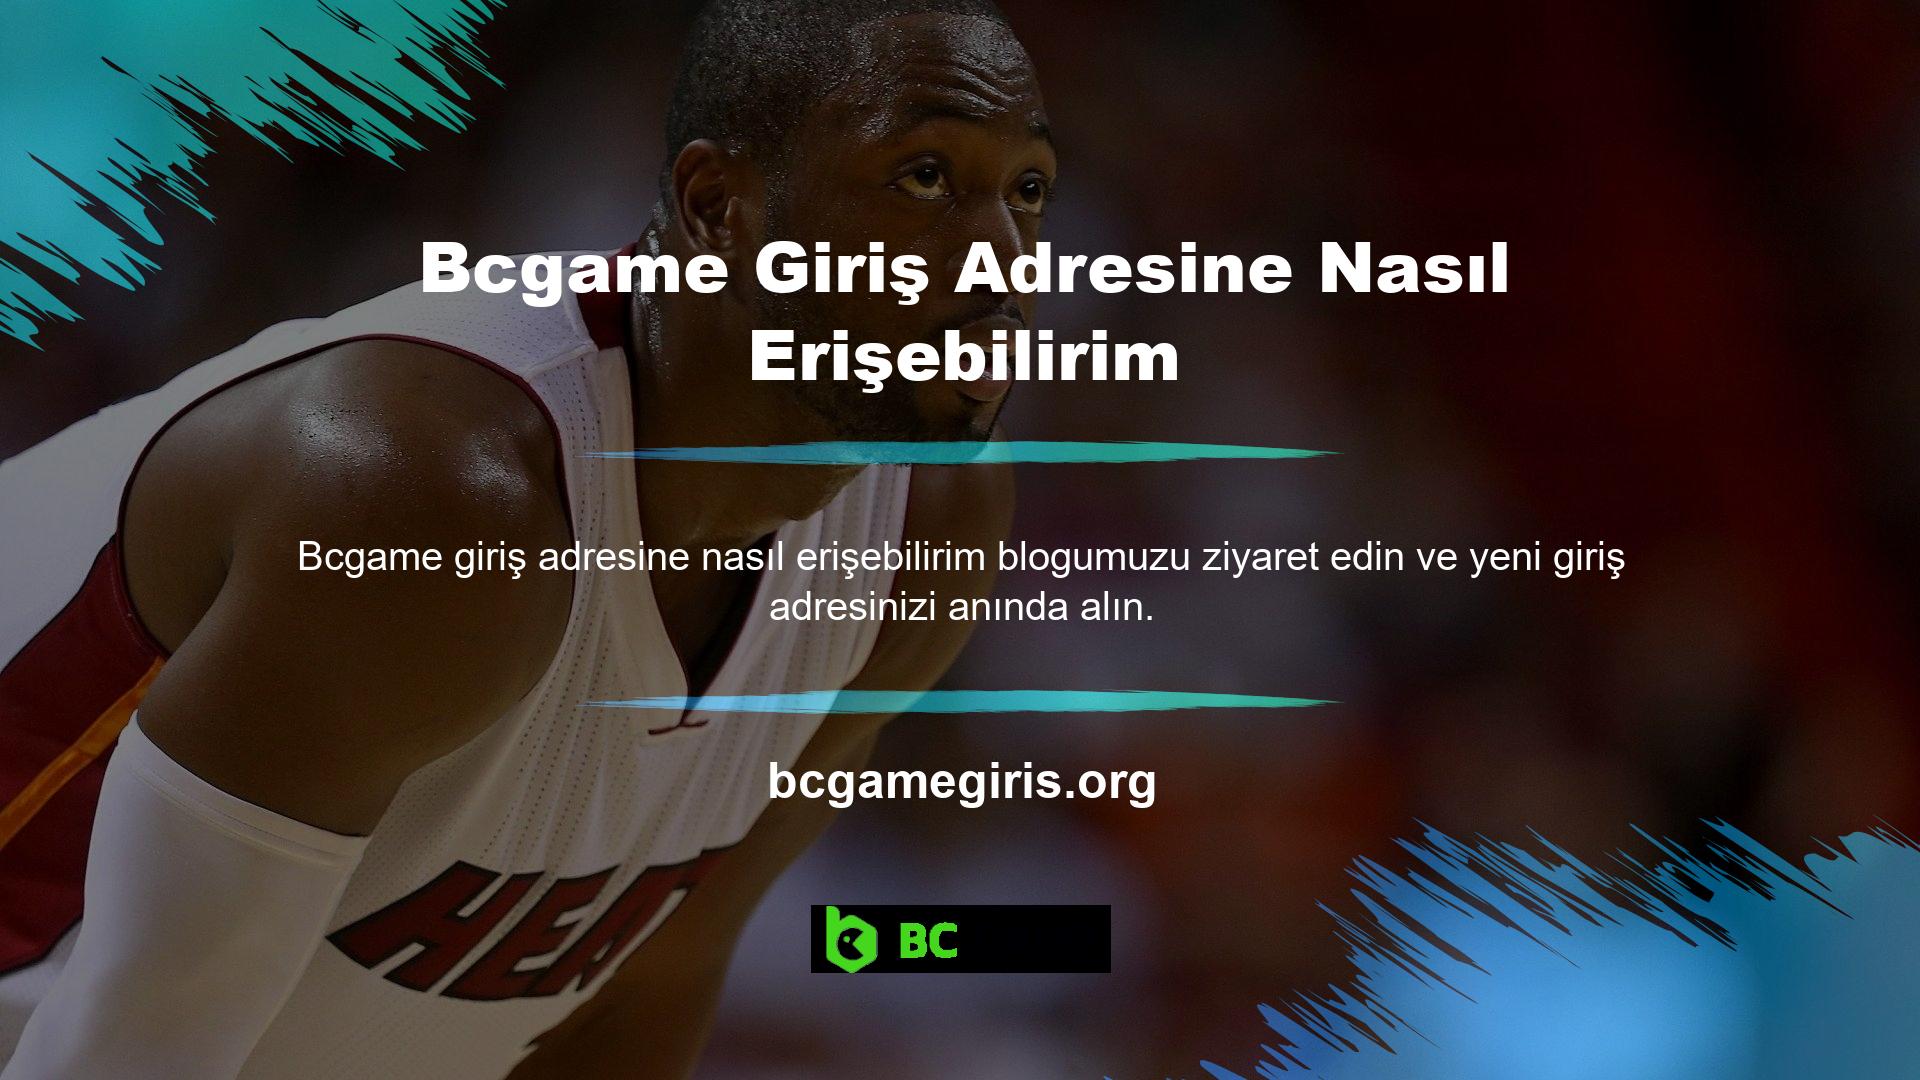 Ayrıca güncel kayıt linkine ulaşmak için Bcgame resmi Facebook sayfasını da ziyaret edebilirsiniz